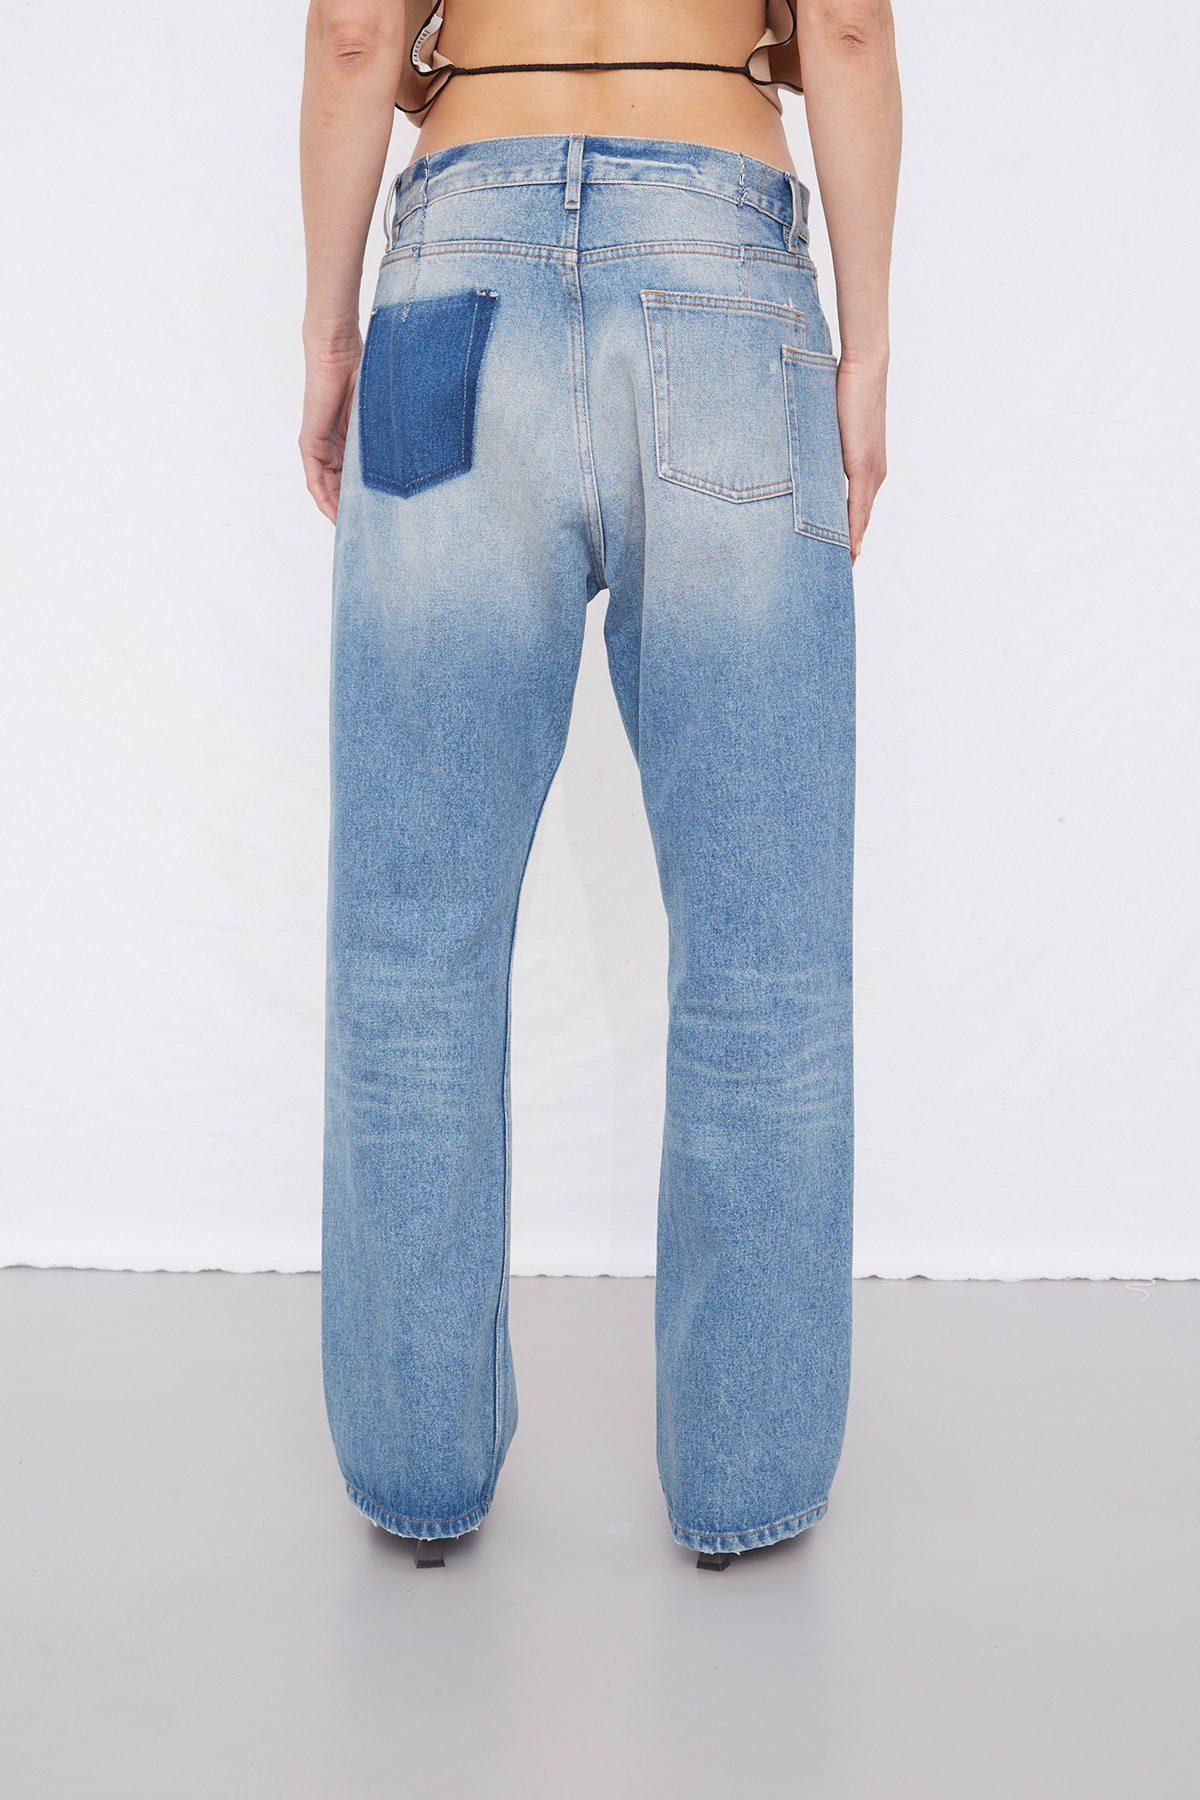 Gauchere - Pocket cut out jeans